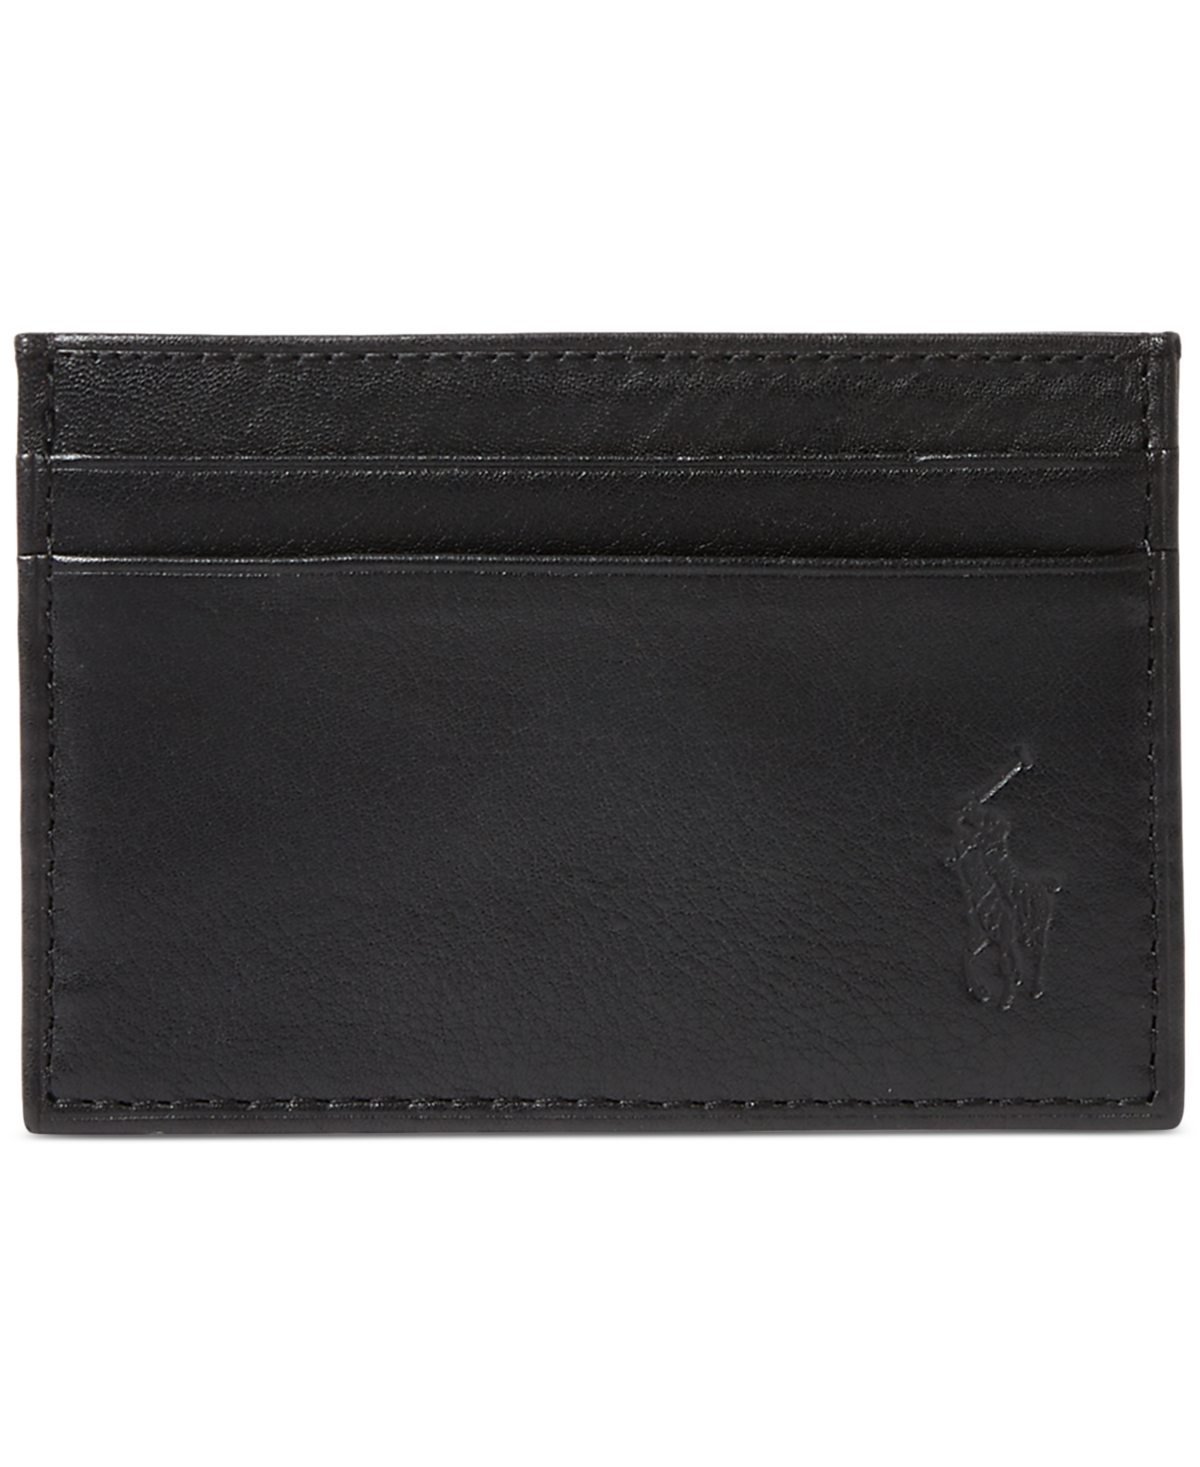 Men's Pebbled Leather Card Case & Money Clip - Black